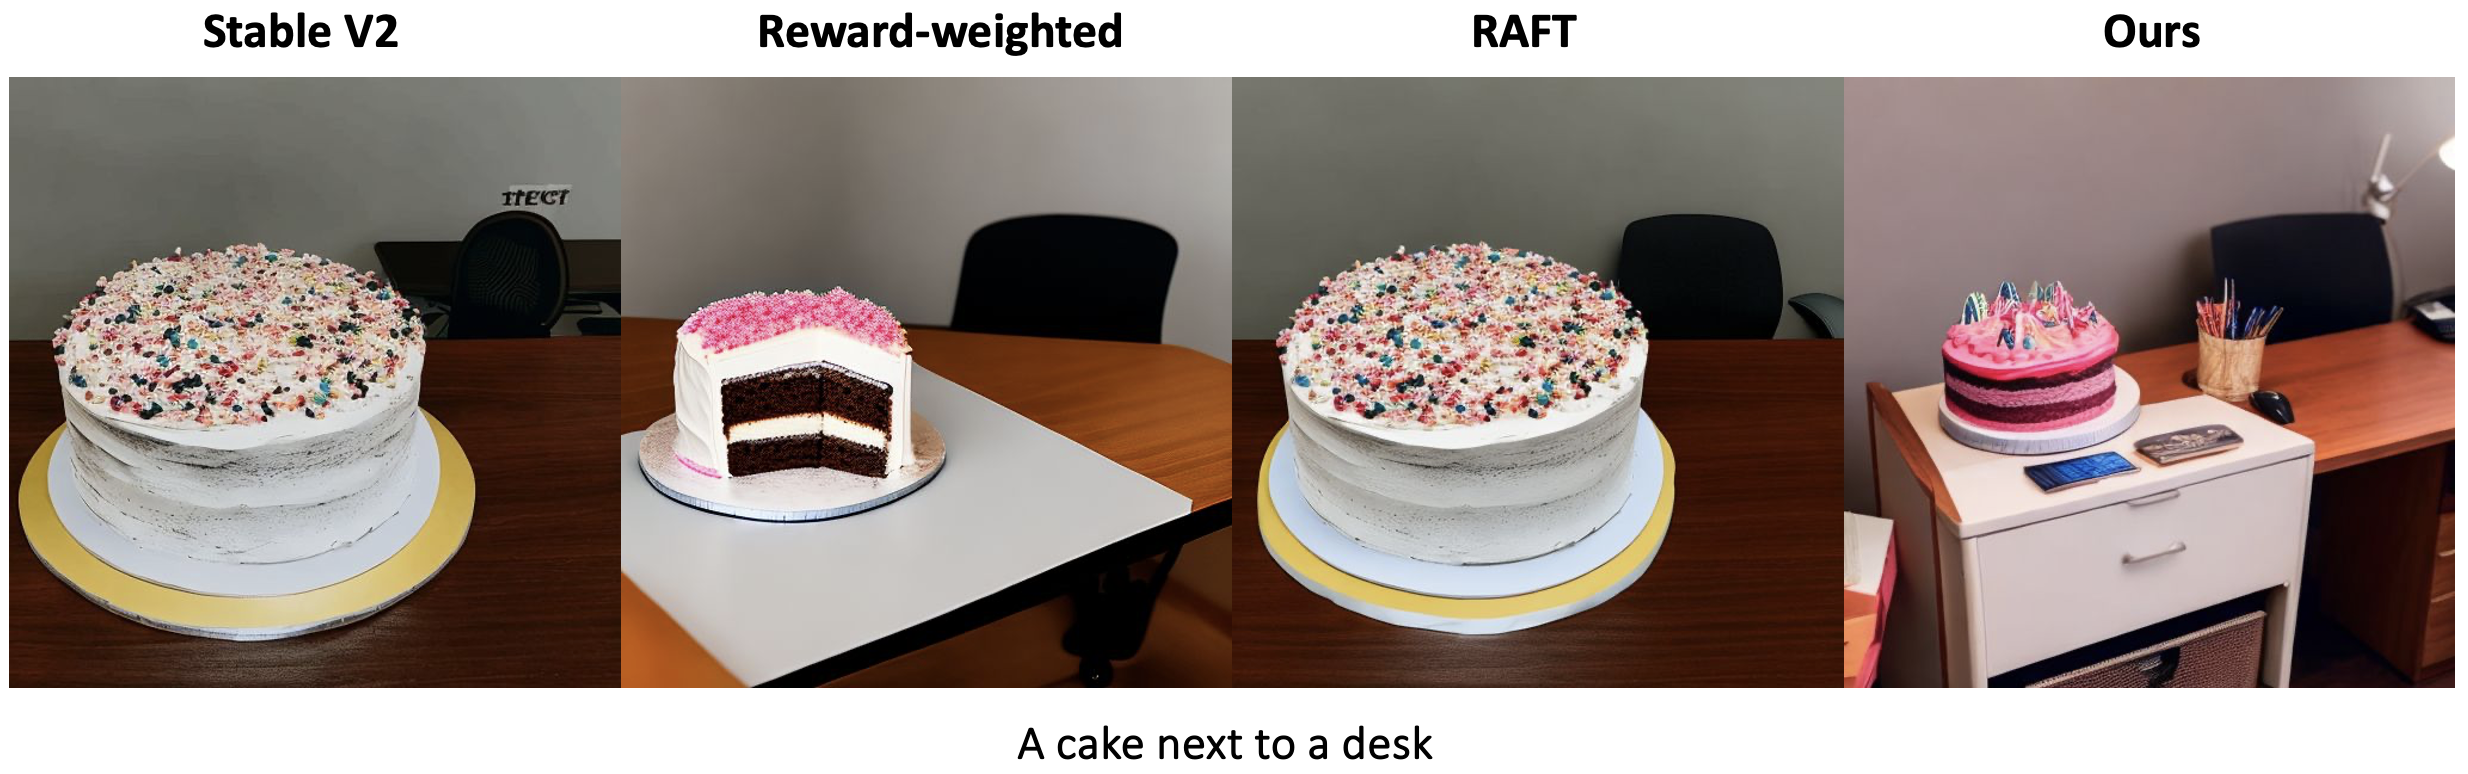 A cake next to a desk.